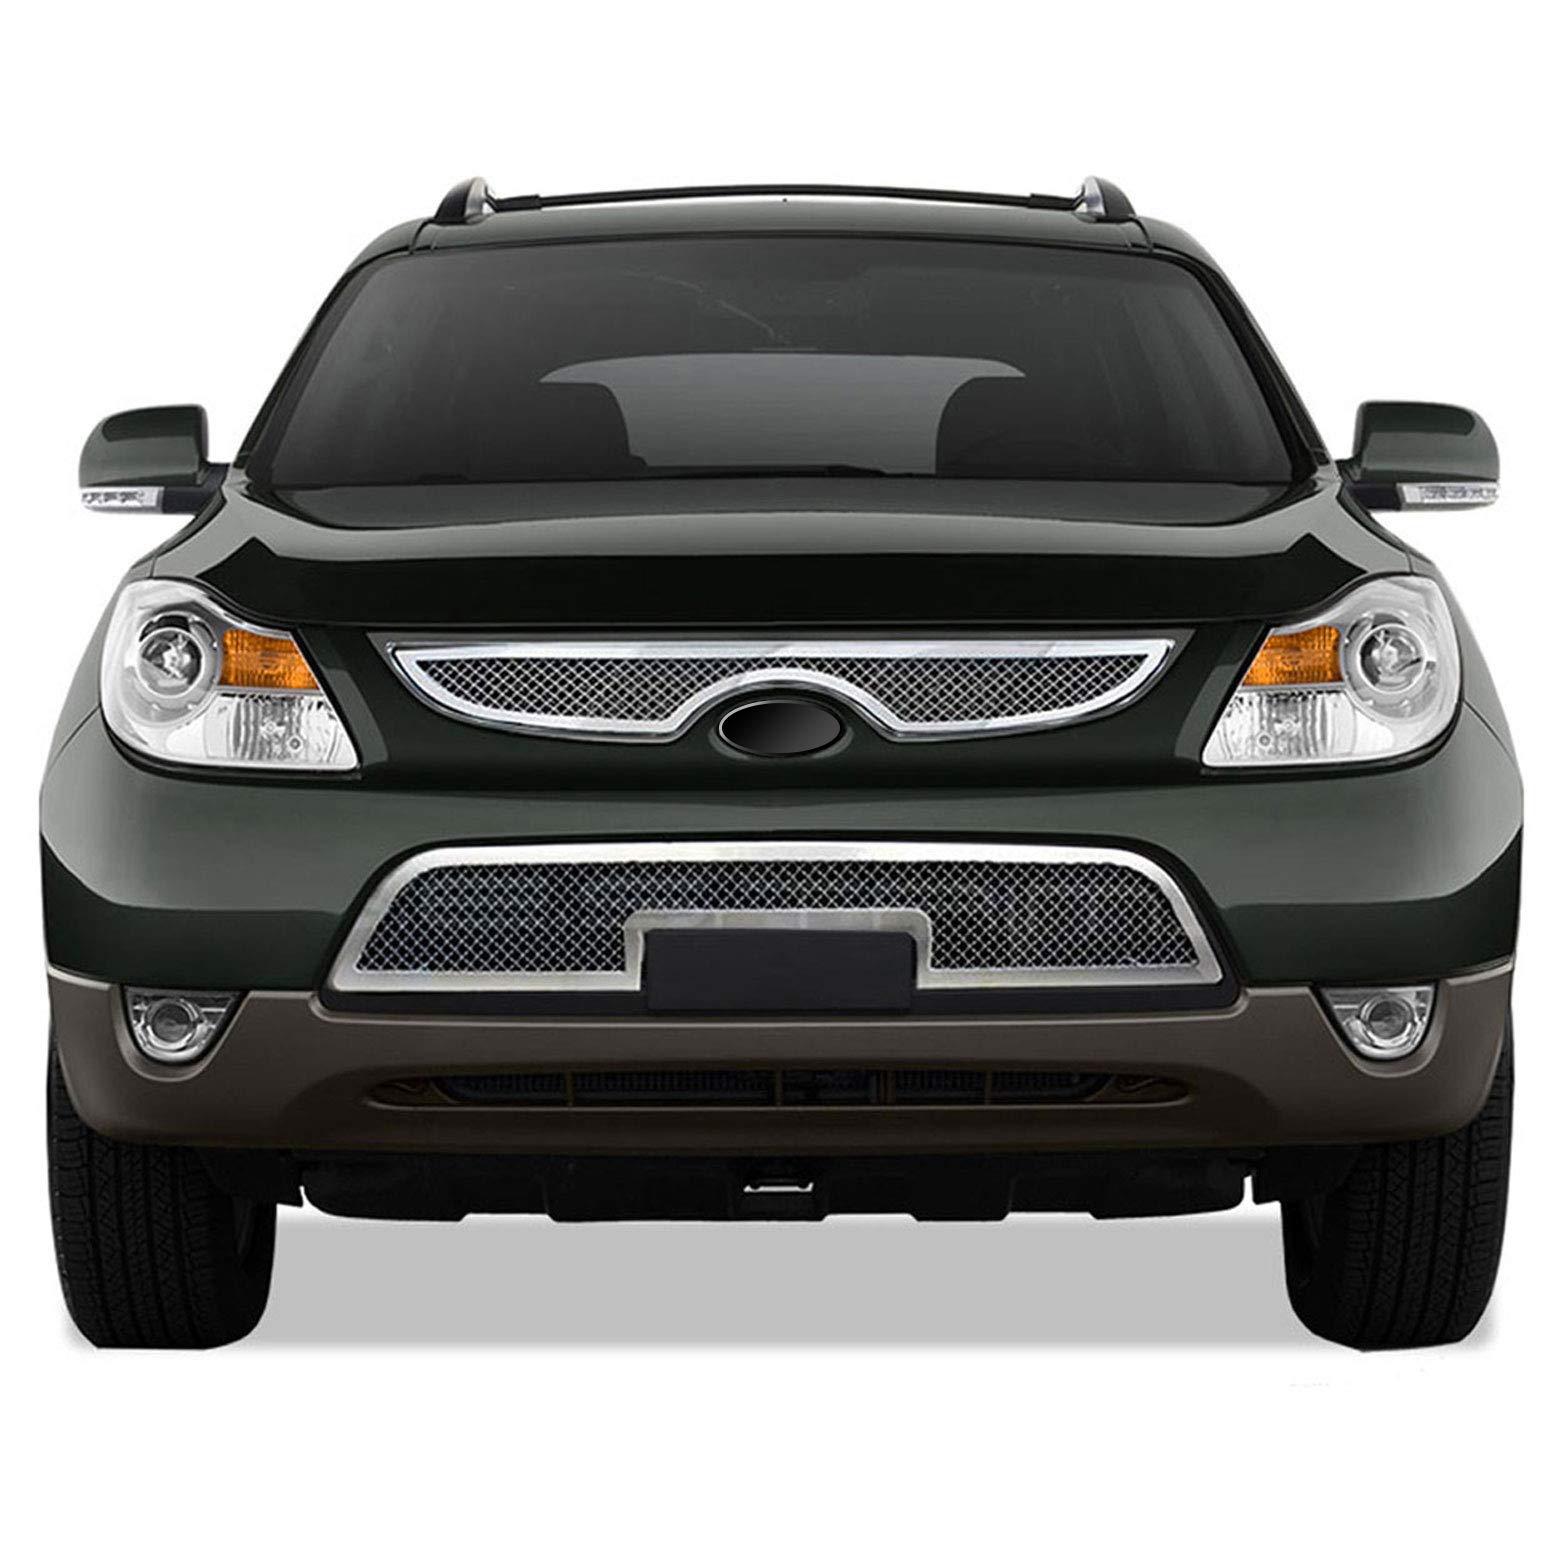 Upgrade Your Auto Premium FX 2pc Chrome Top+Bumper Mesh Grille Insert for Hyundai  Veracruz 2007-12